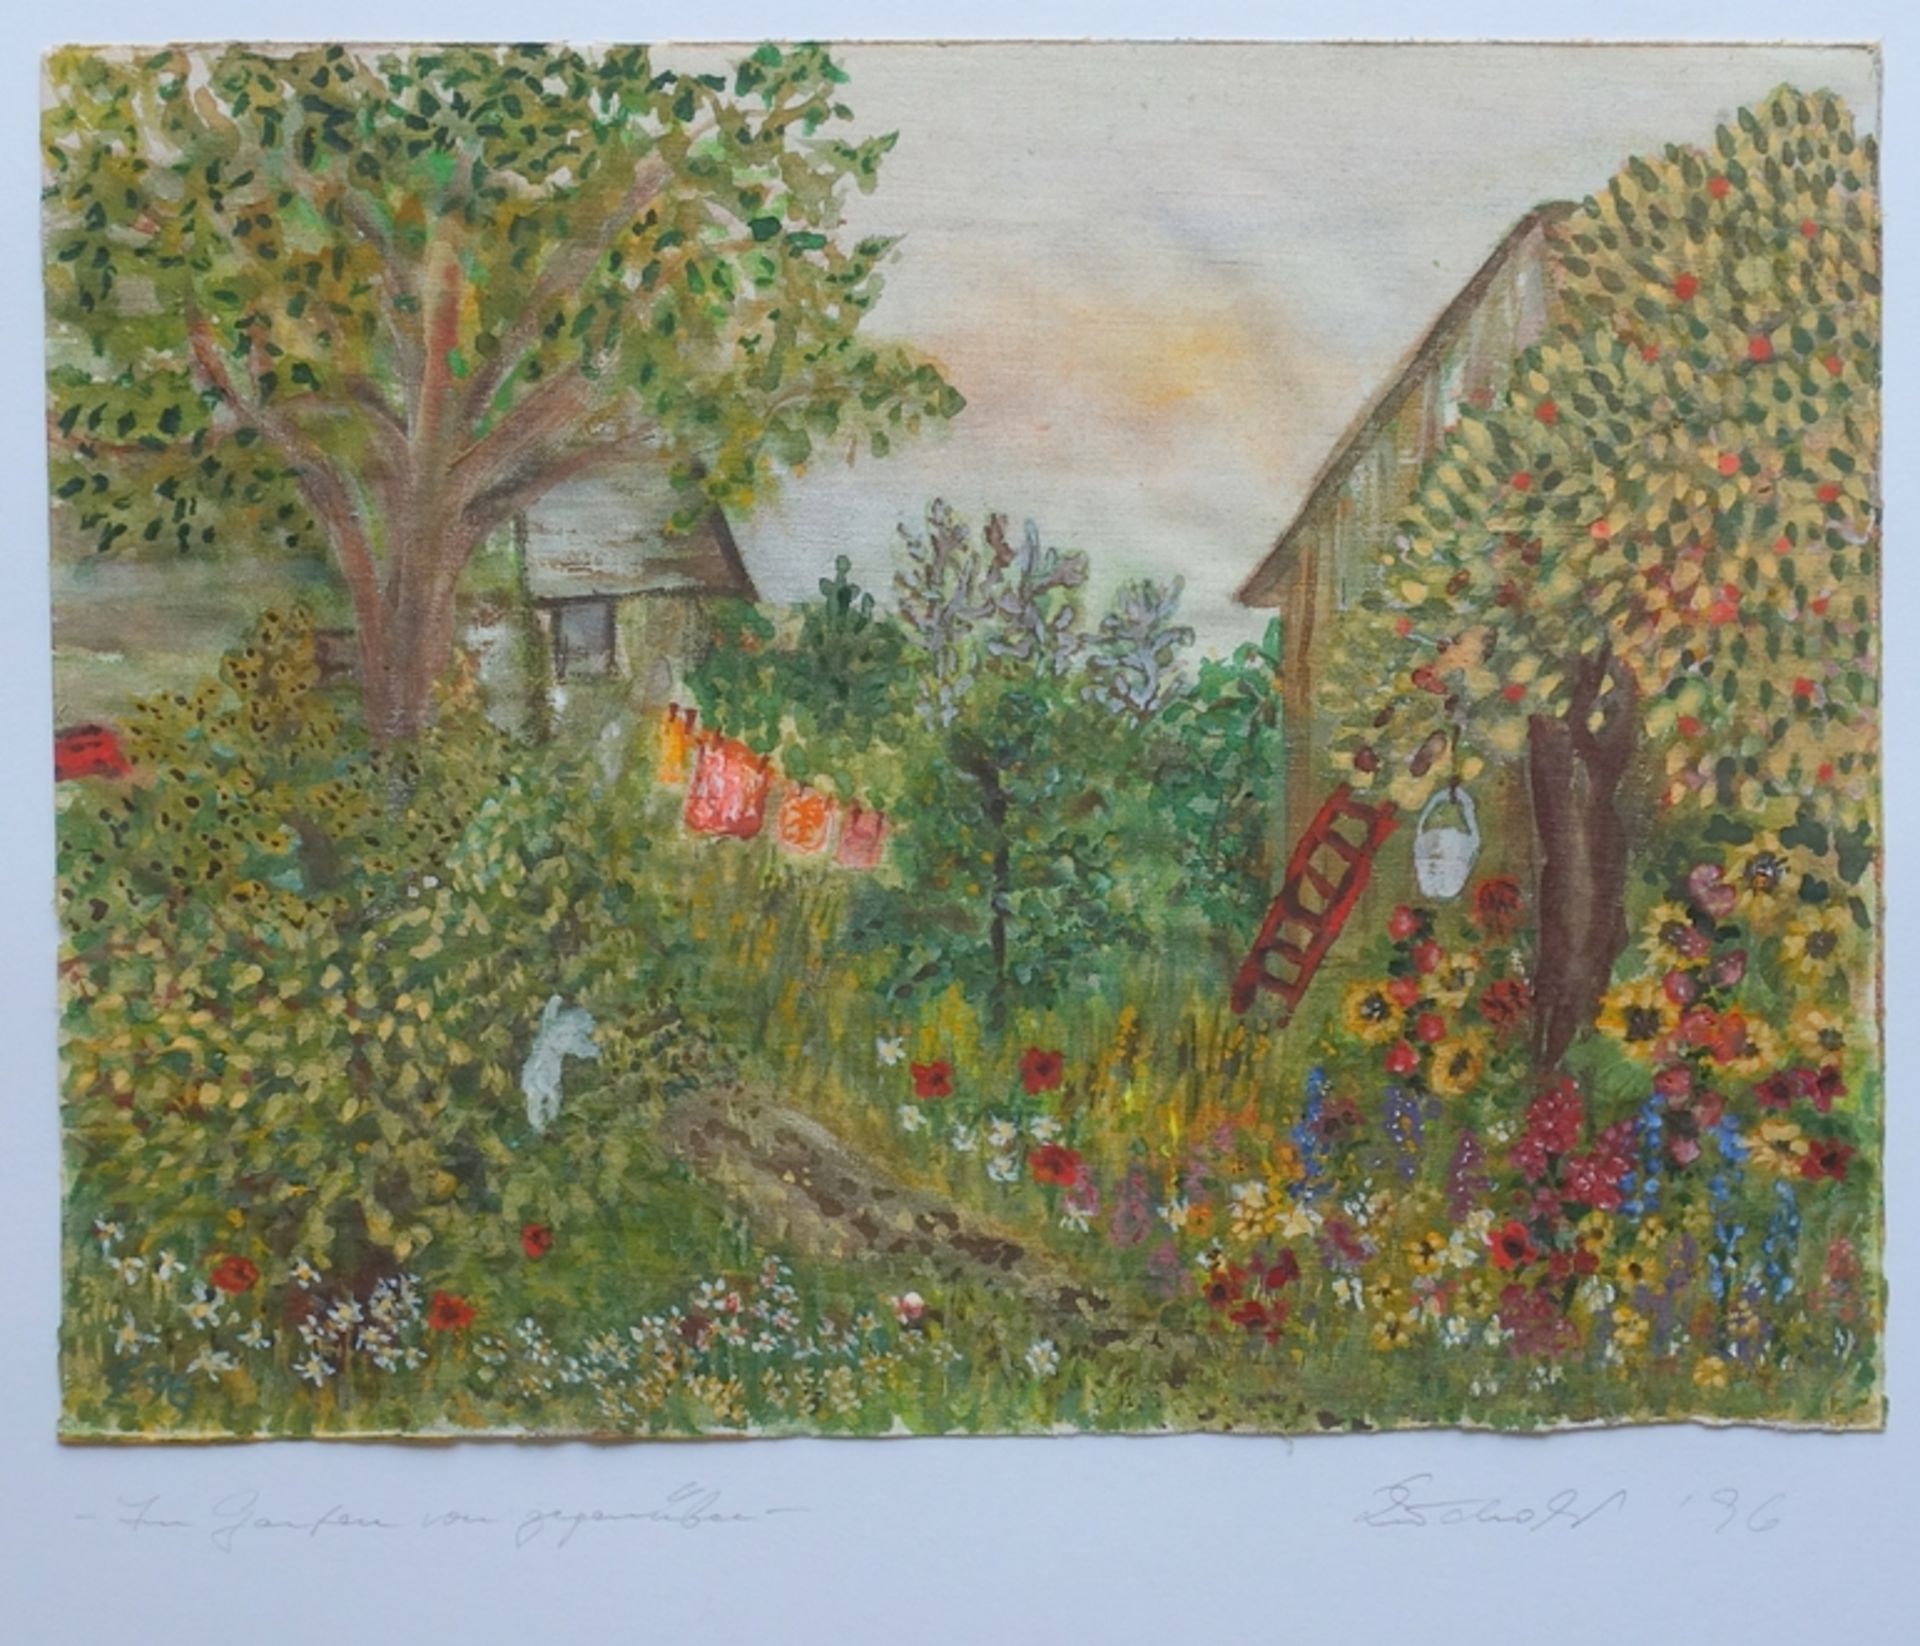 Erika Zuchold (1947, Lucka - 2015, Asunción, PRY), "Im Garten von gegenüber", 1996, Aquarell/Lwd.